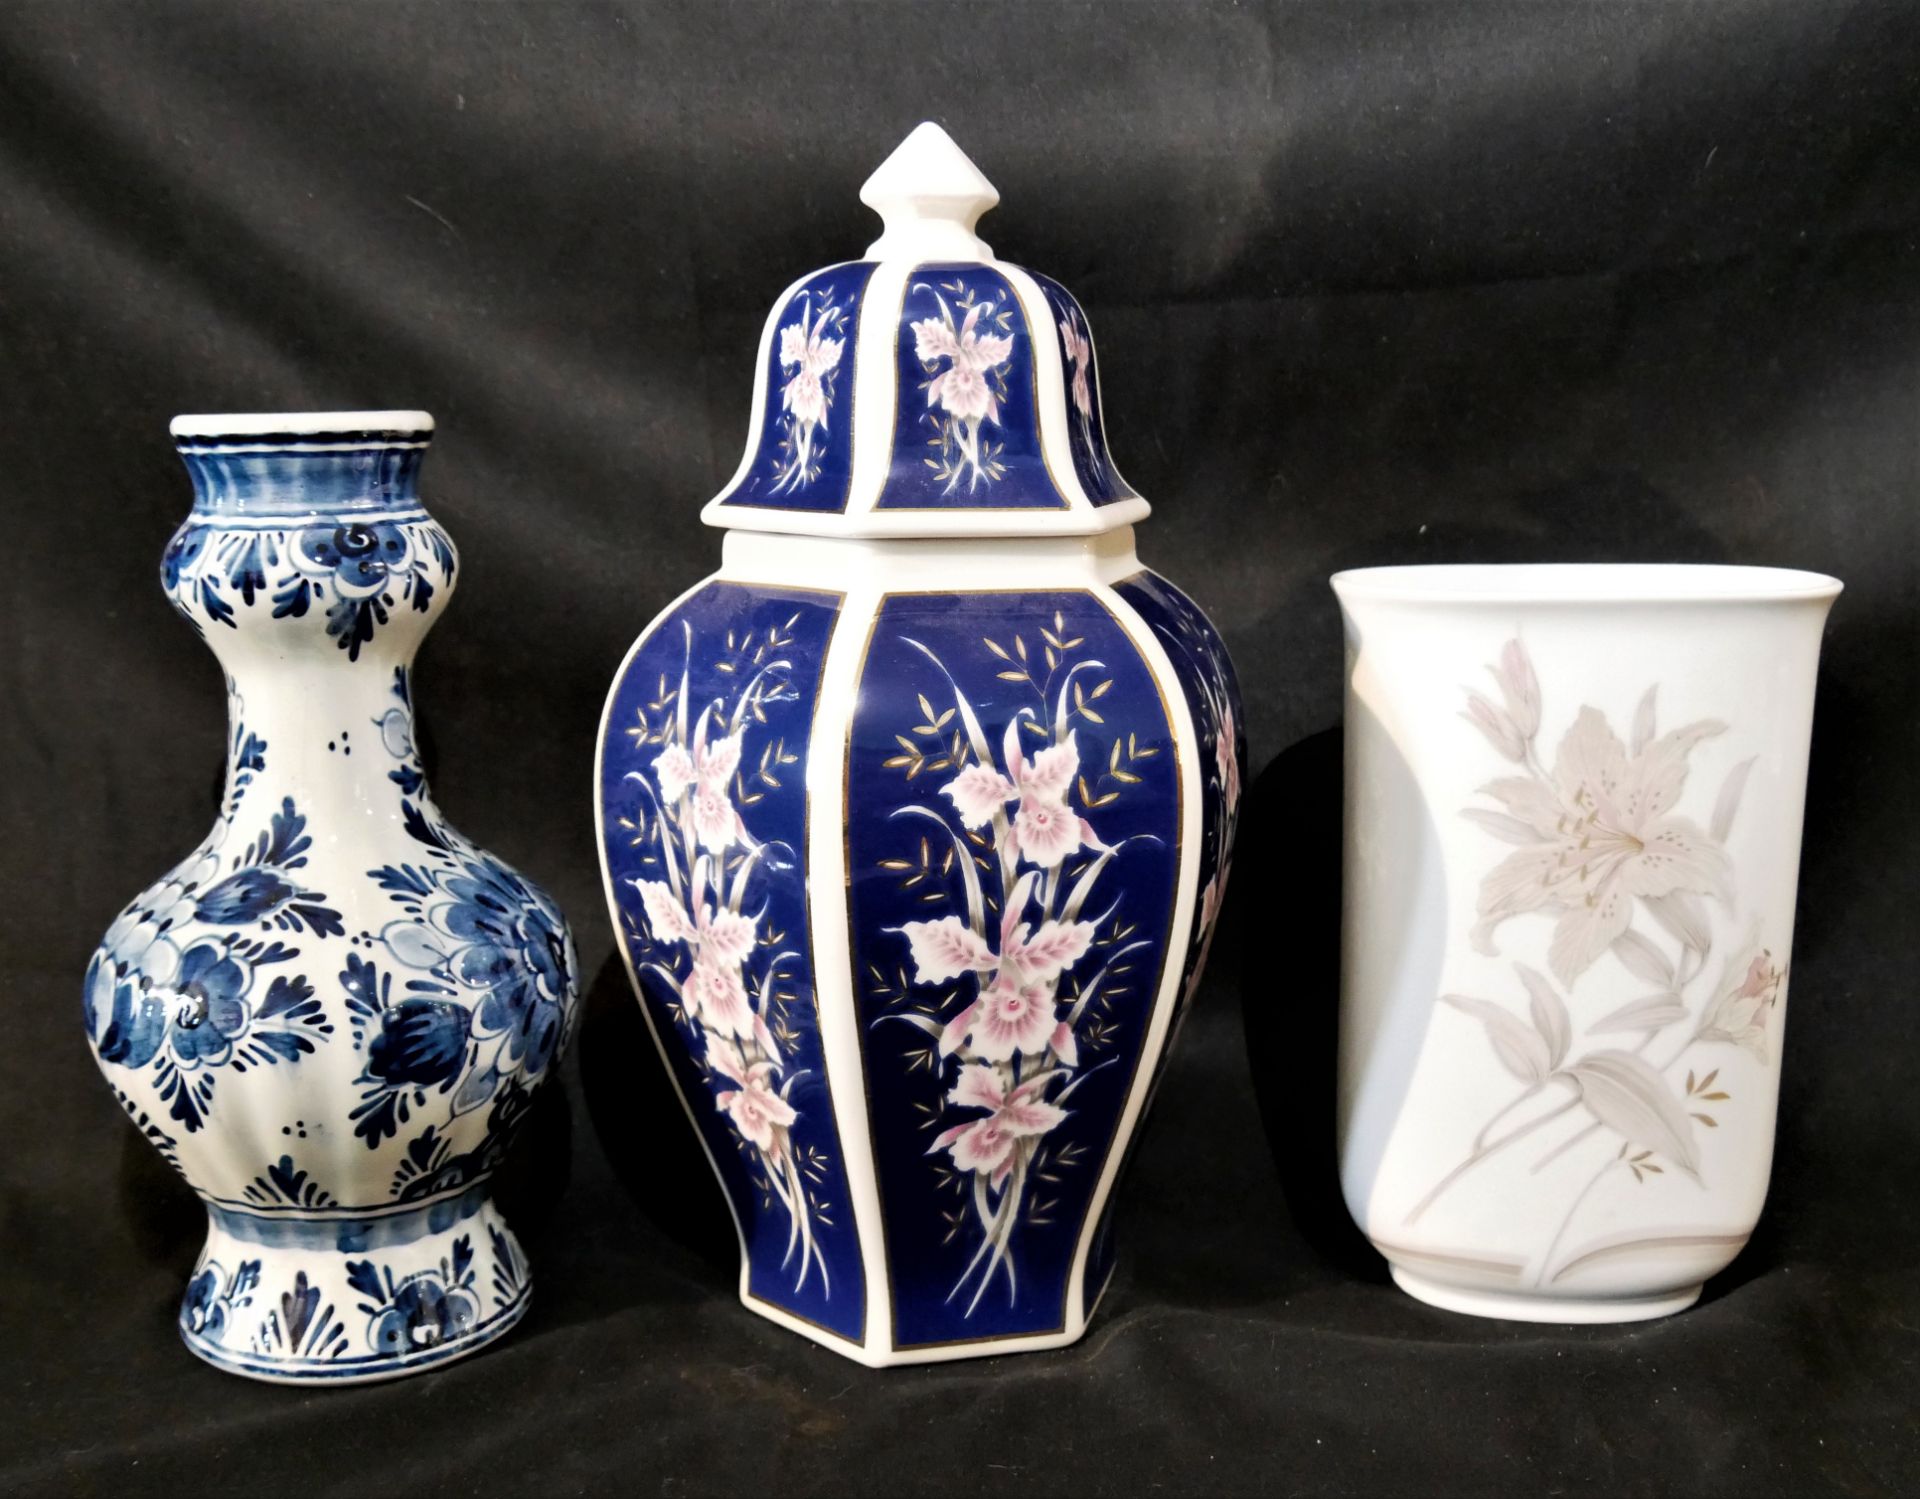 Lot Porzellan & Keramik aus Auflösung, insgesamt 3 Stück. Dabei 1x Delft, 1x Kaiser sowie 1